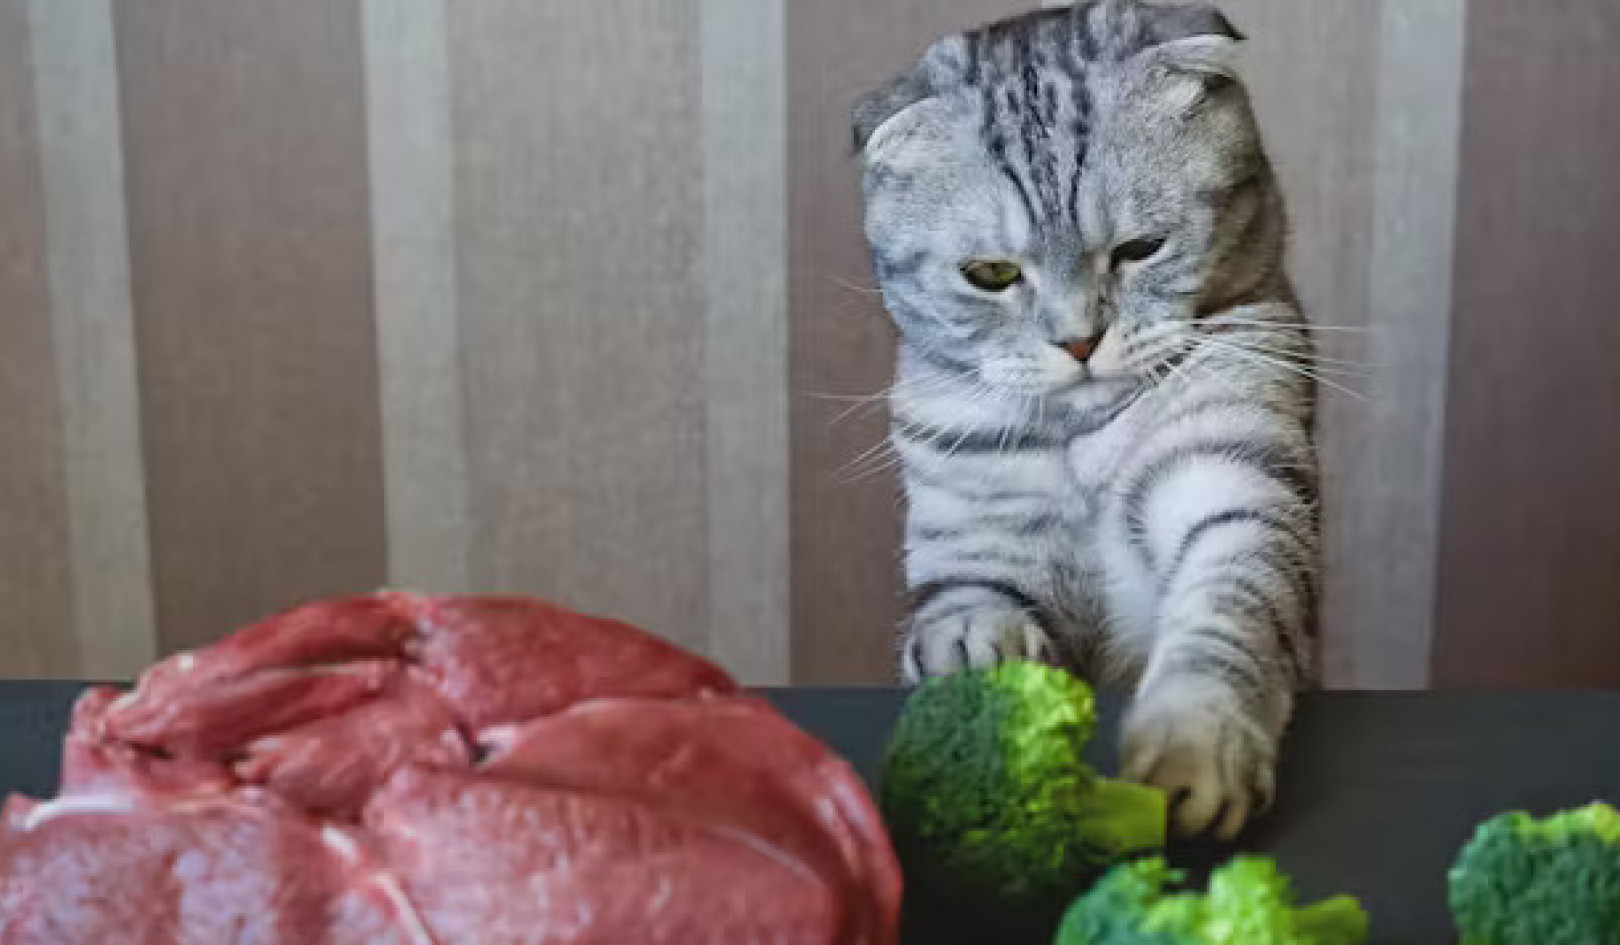 ปลอดภัยจริงหรือไม่ที่จะให้อาหารแมวของคุณด้วยอาหารมังสวิรัติ